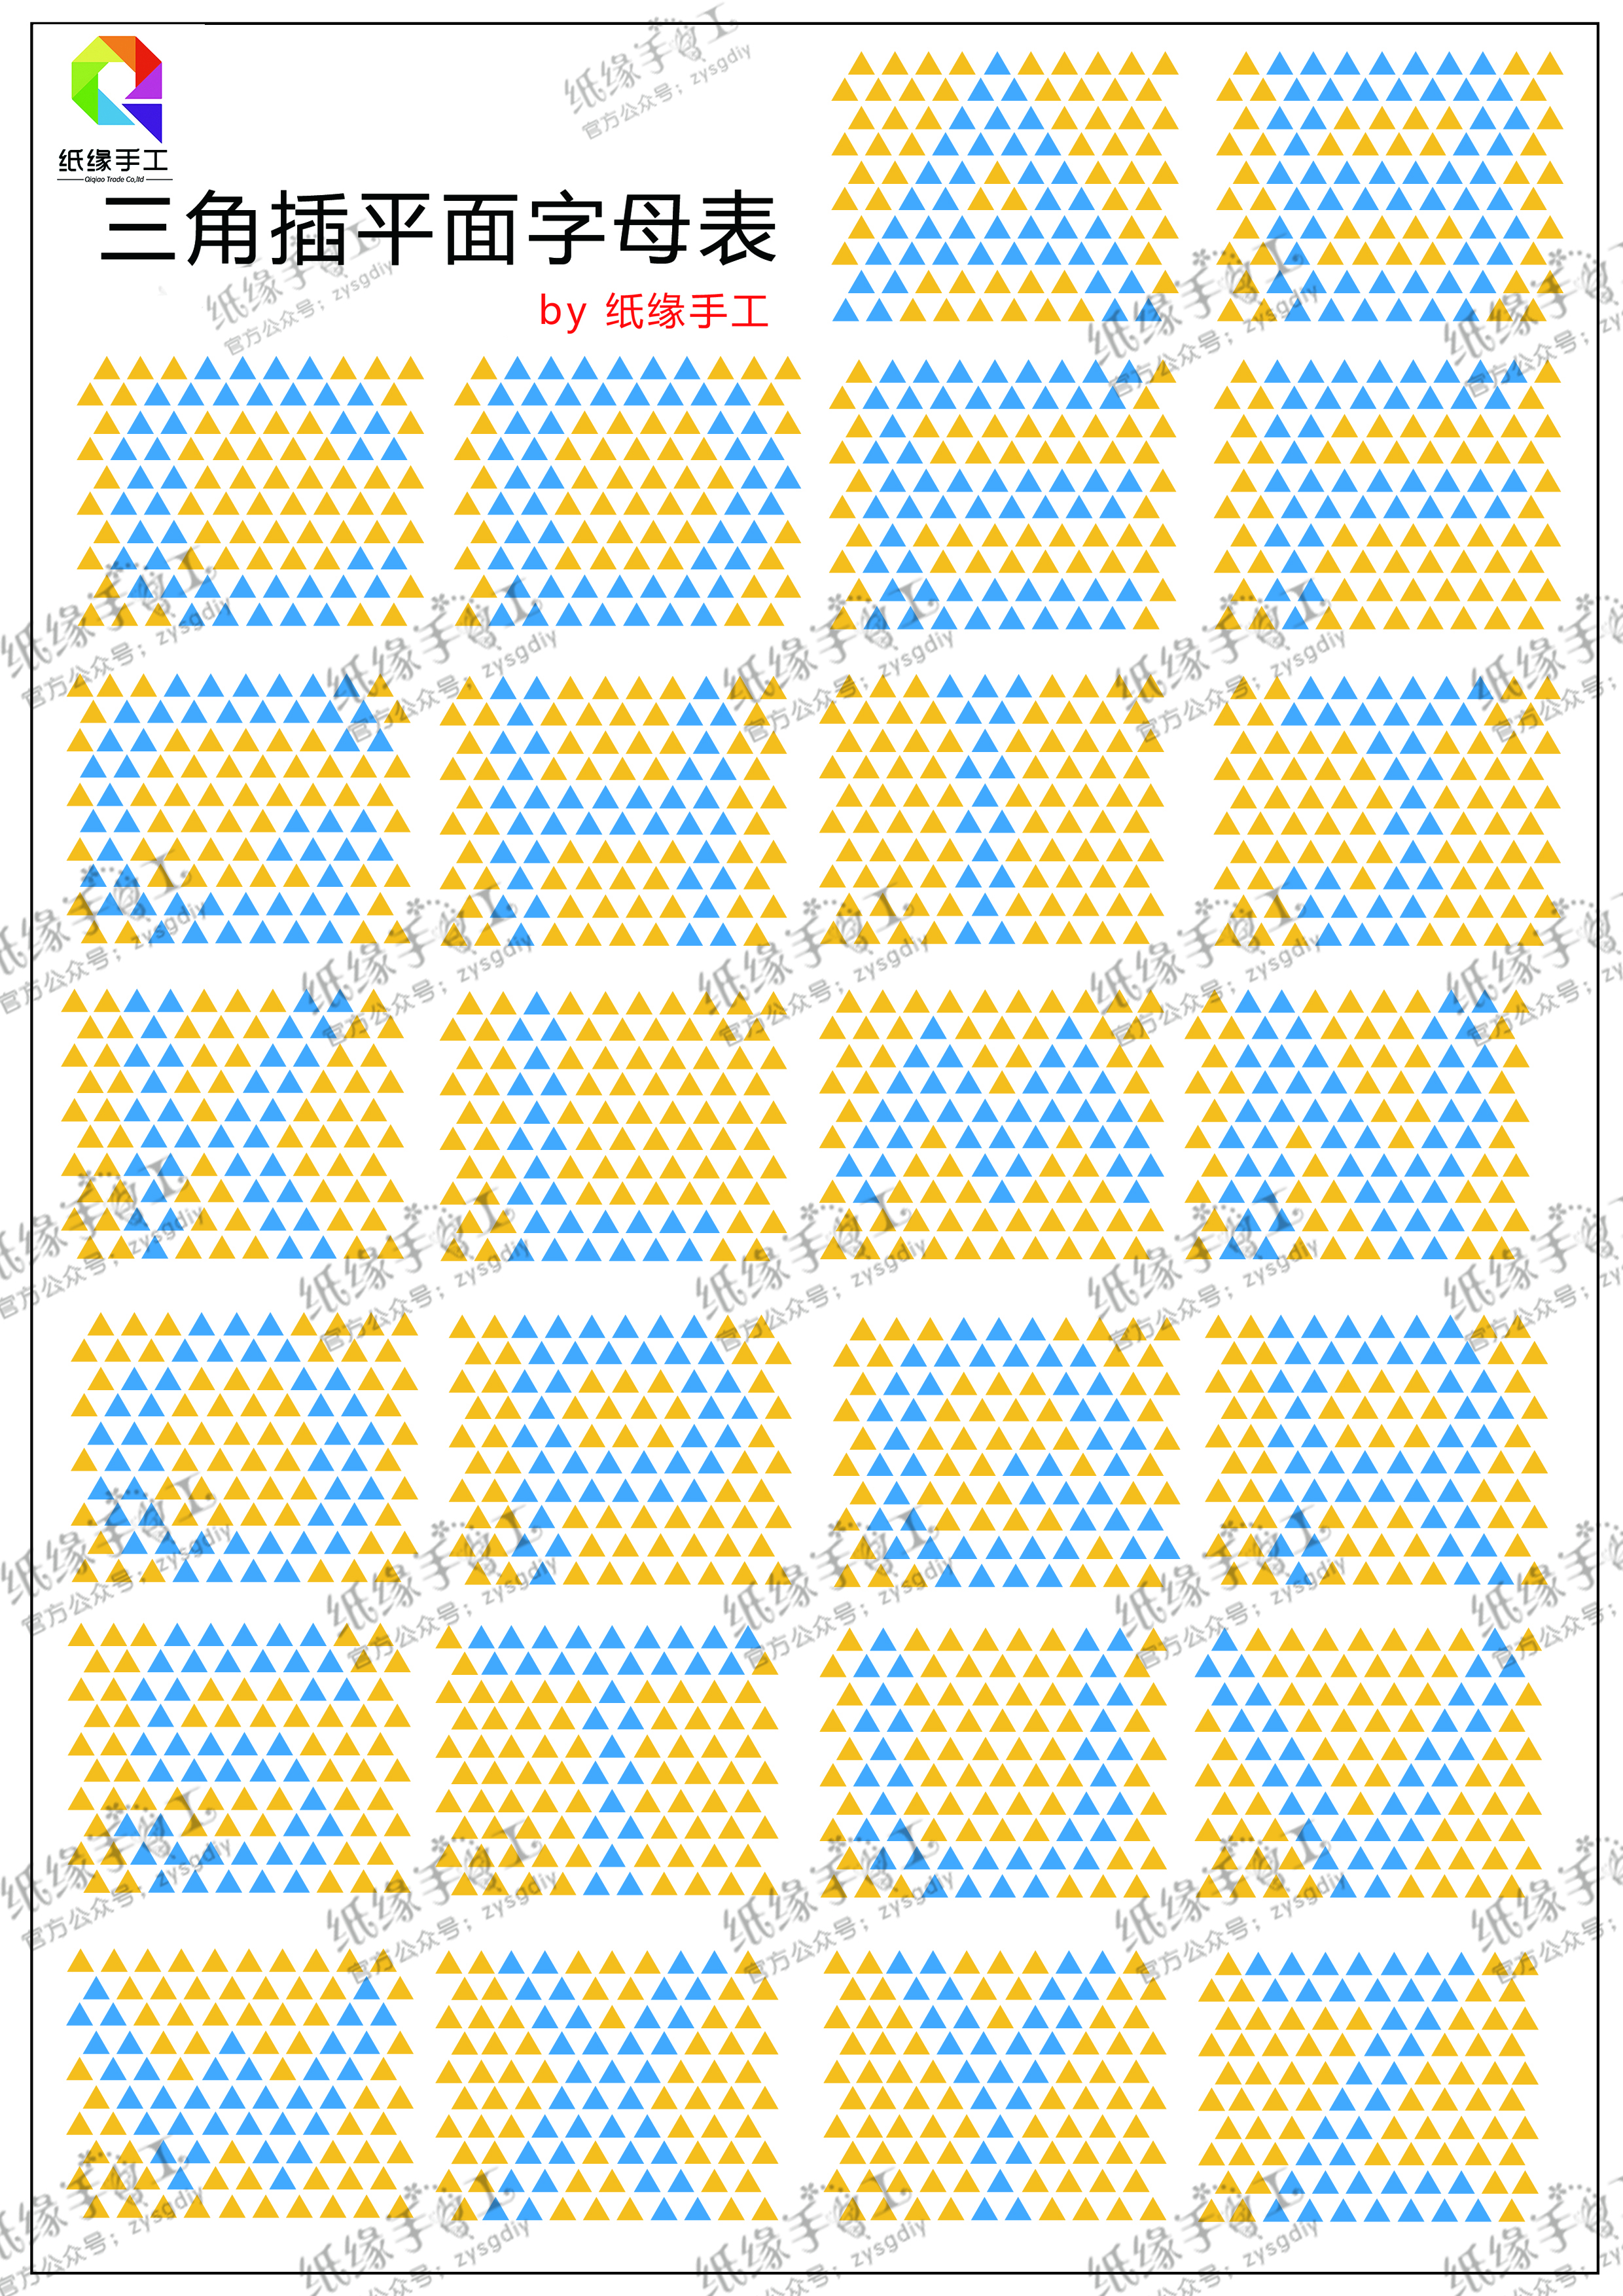 菠萝笔筒字母表.jpg